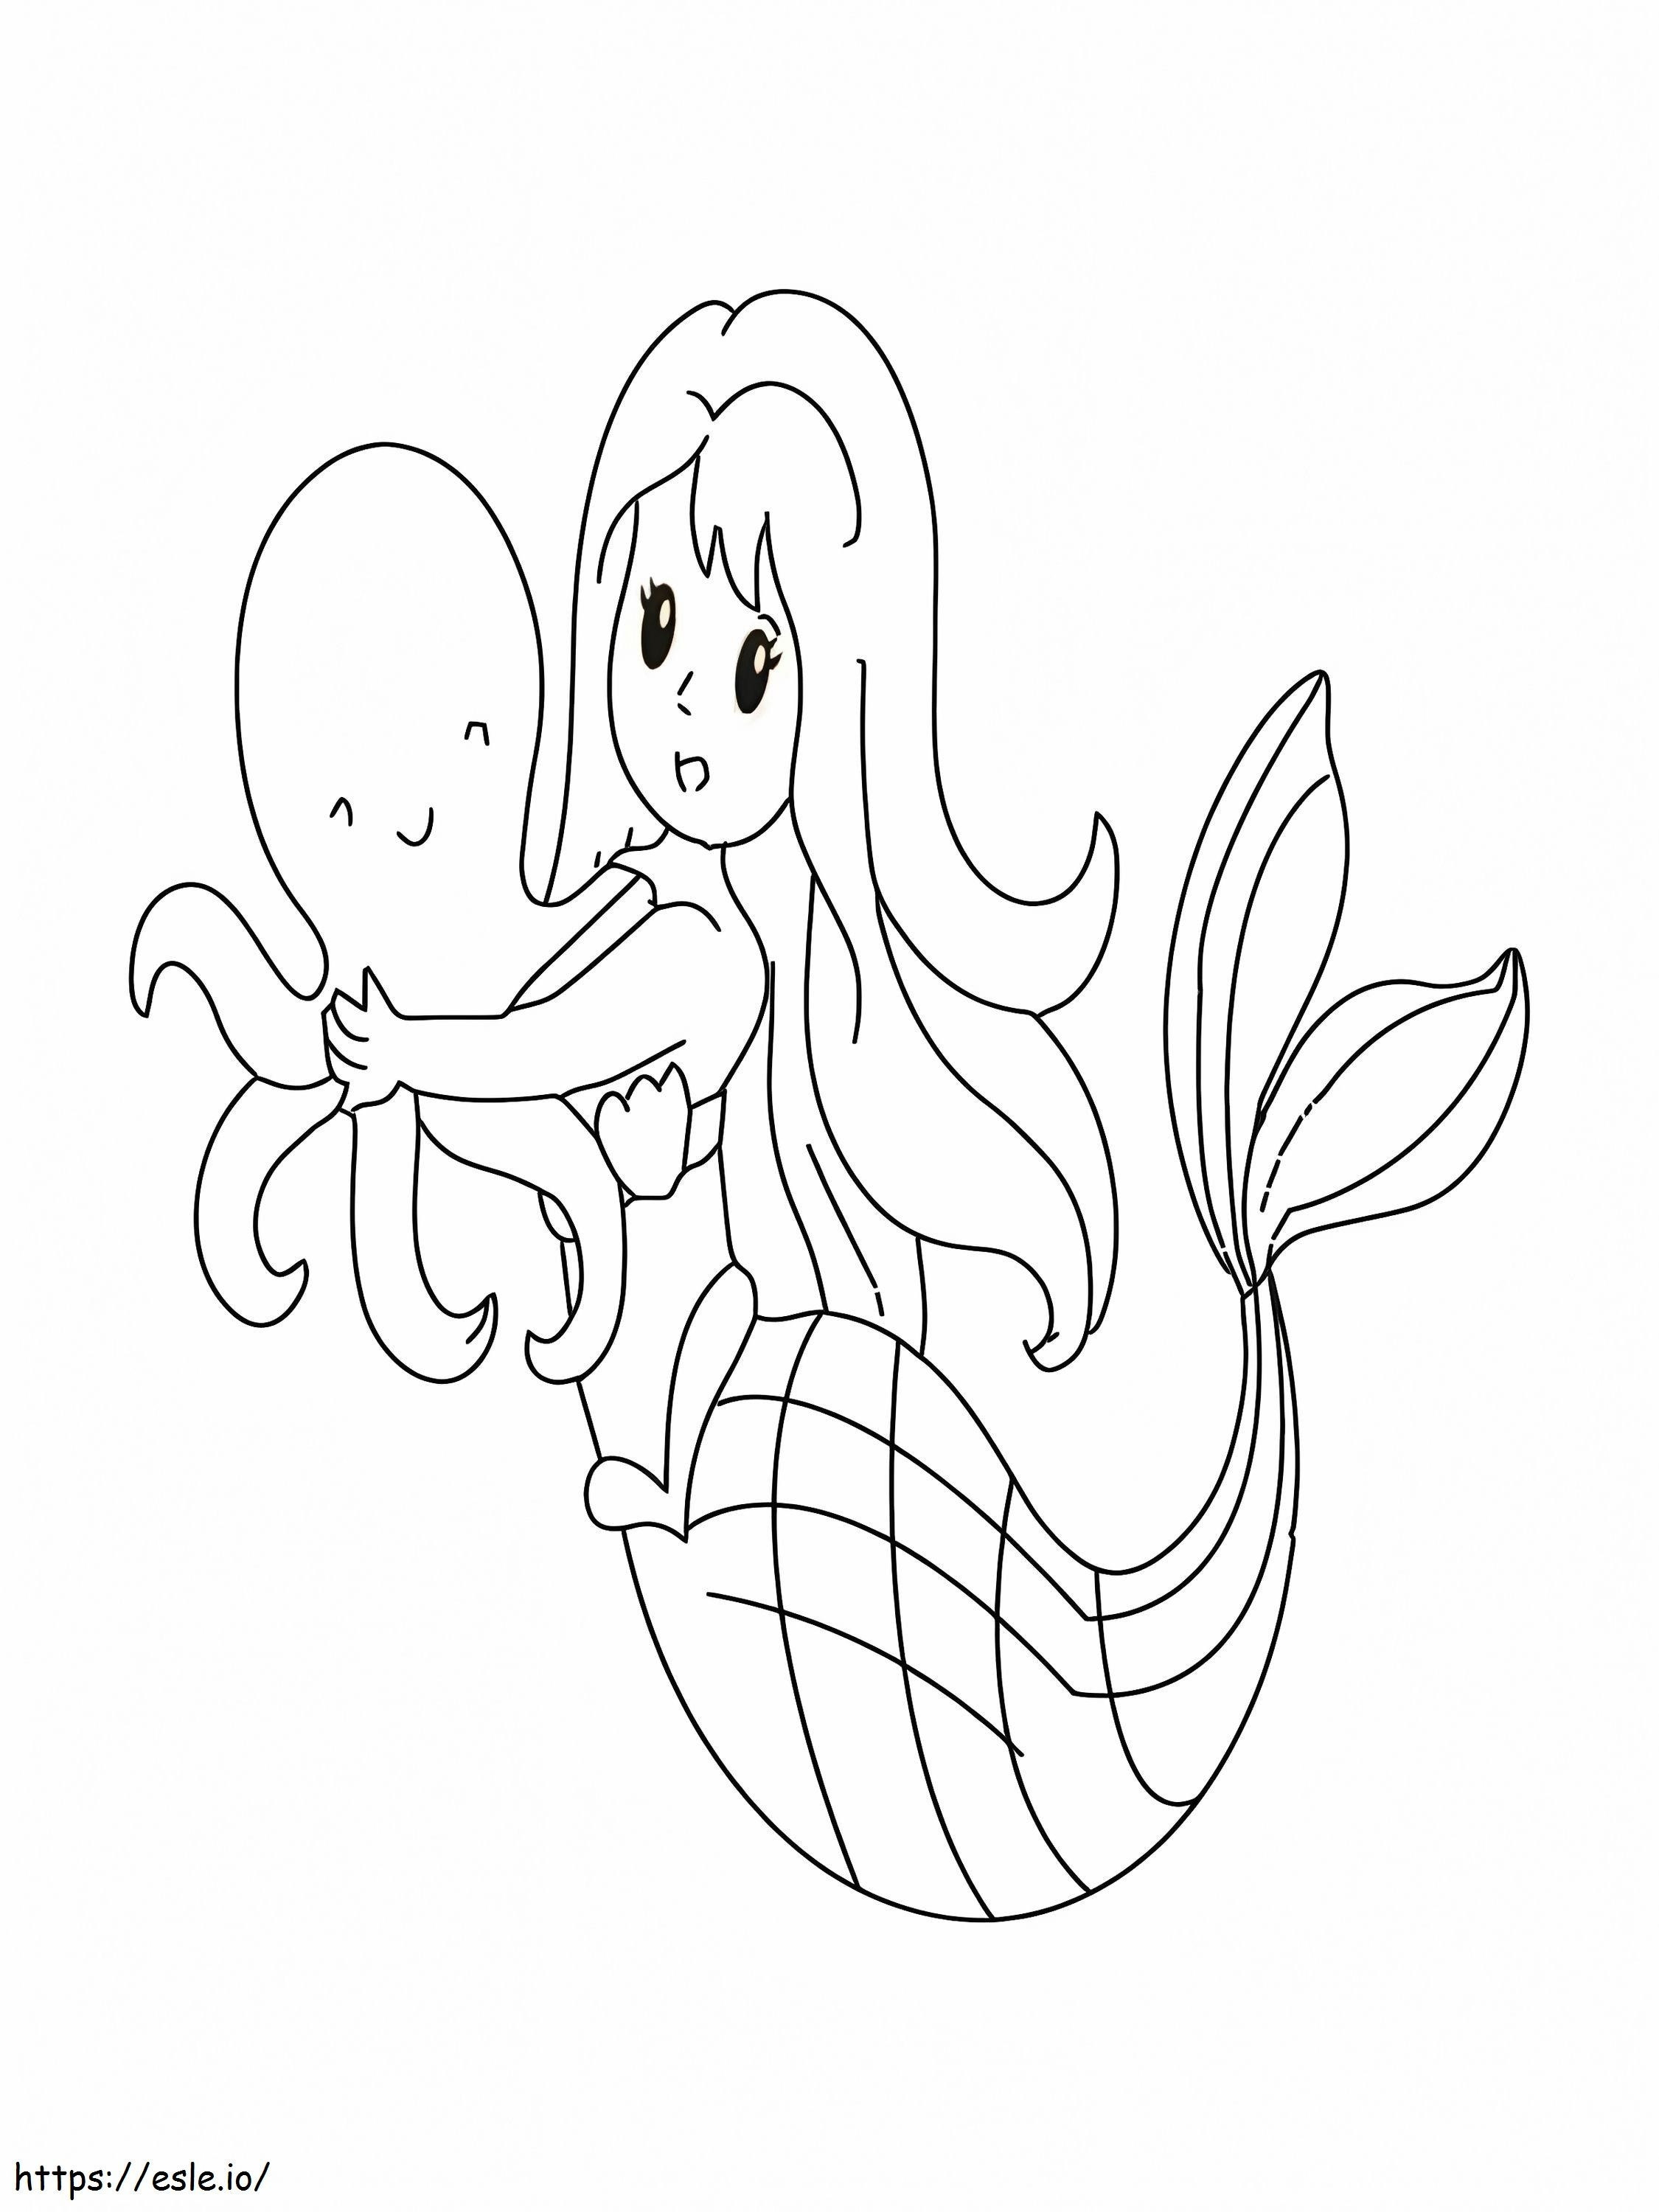 Glückliche Meerjungfrau und Oktopus ausmalbilder